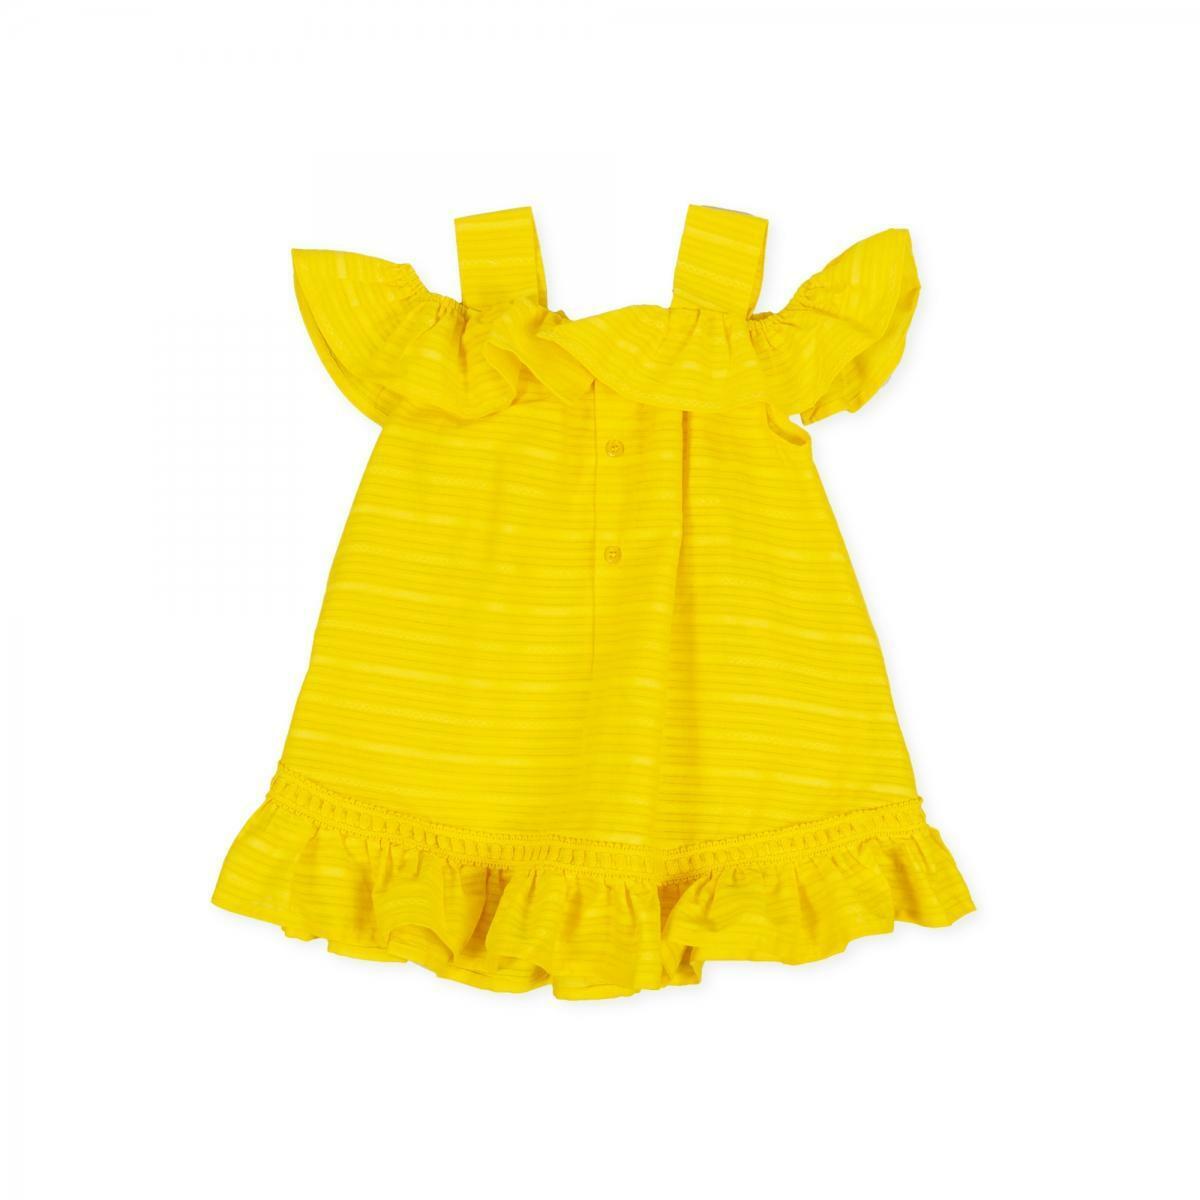 tutto piccolo tutto piccolo vestitino neonata giallo 8271s20/y00